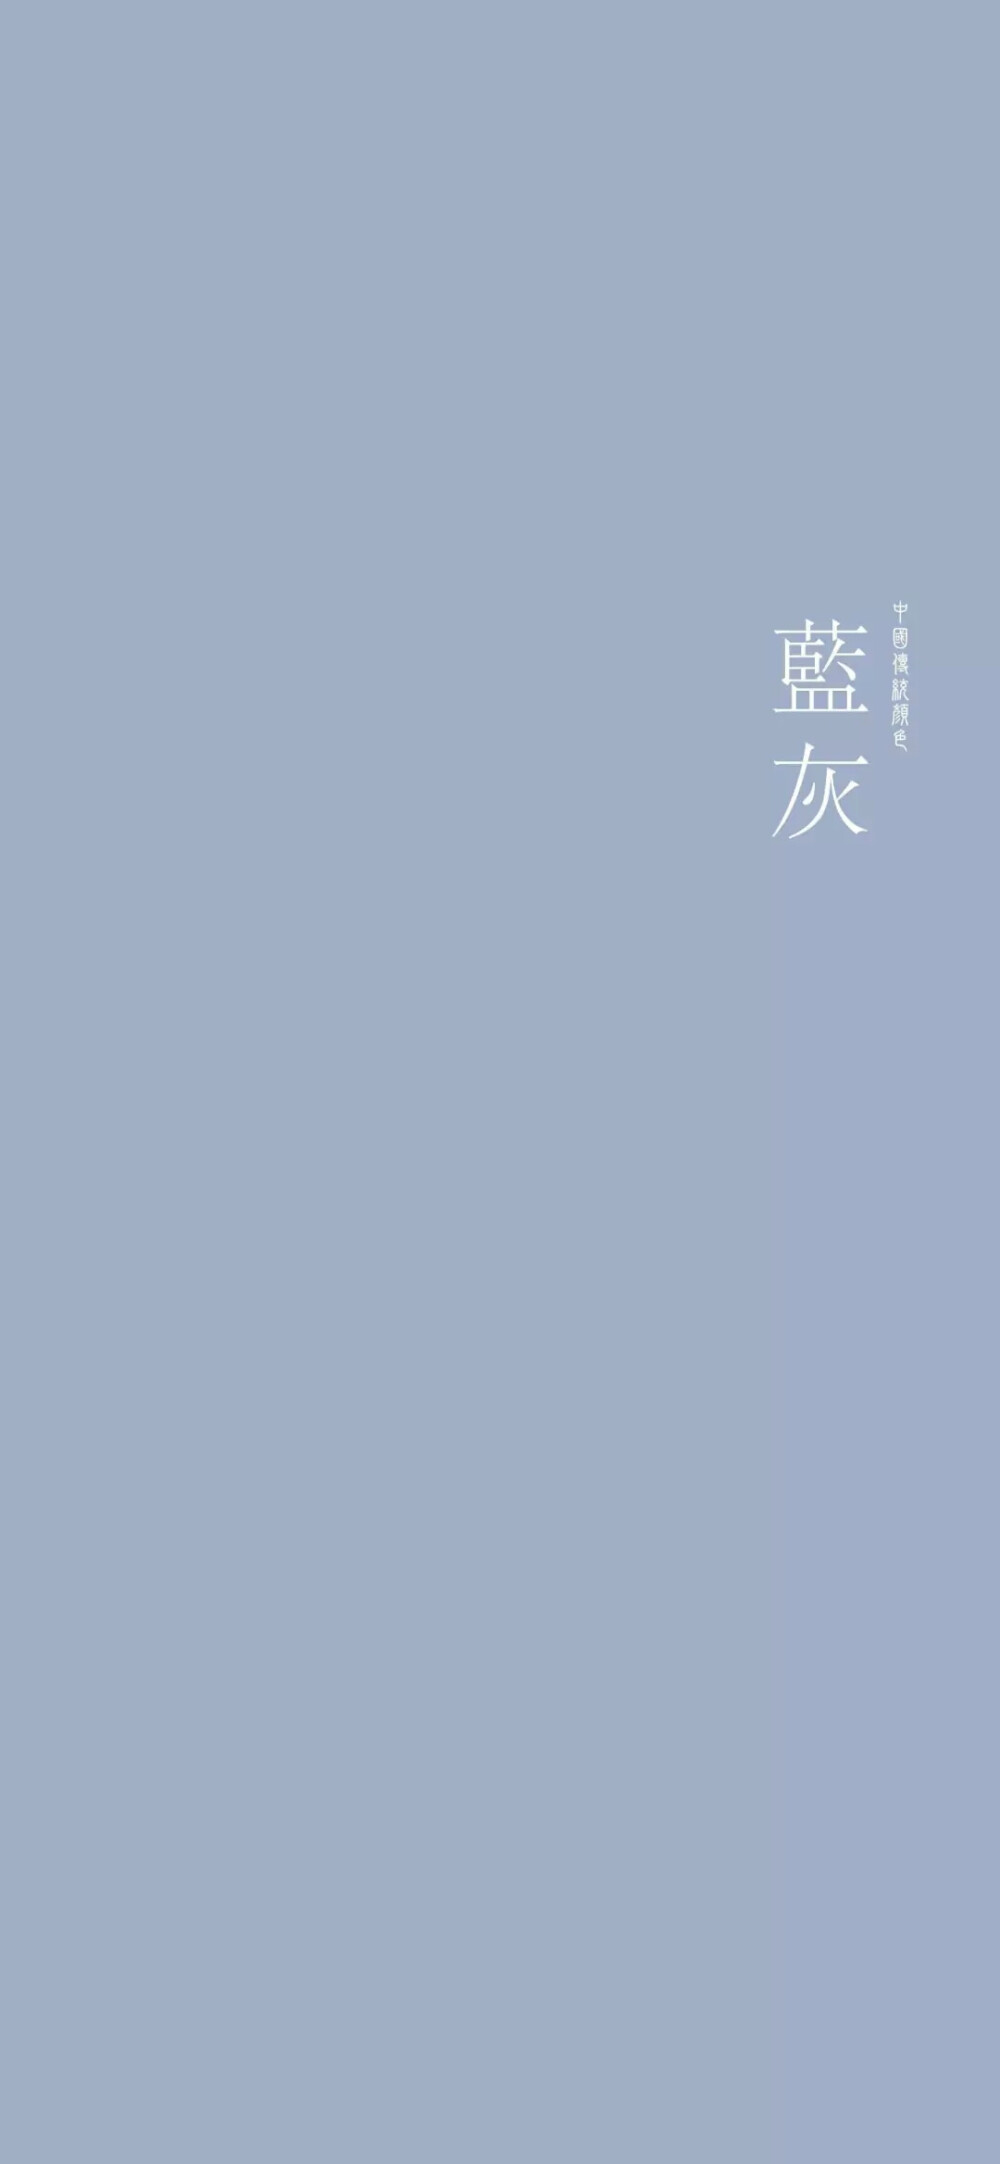 中国传统颜色 纯色手机壁纸 蓝灰色